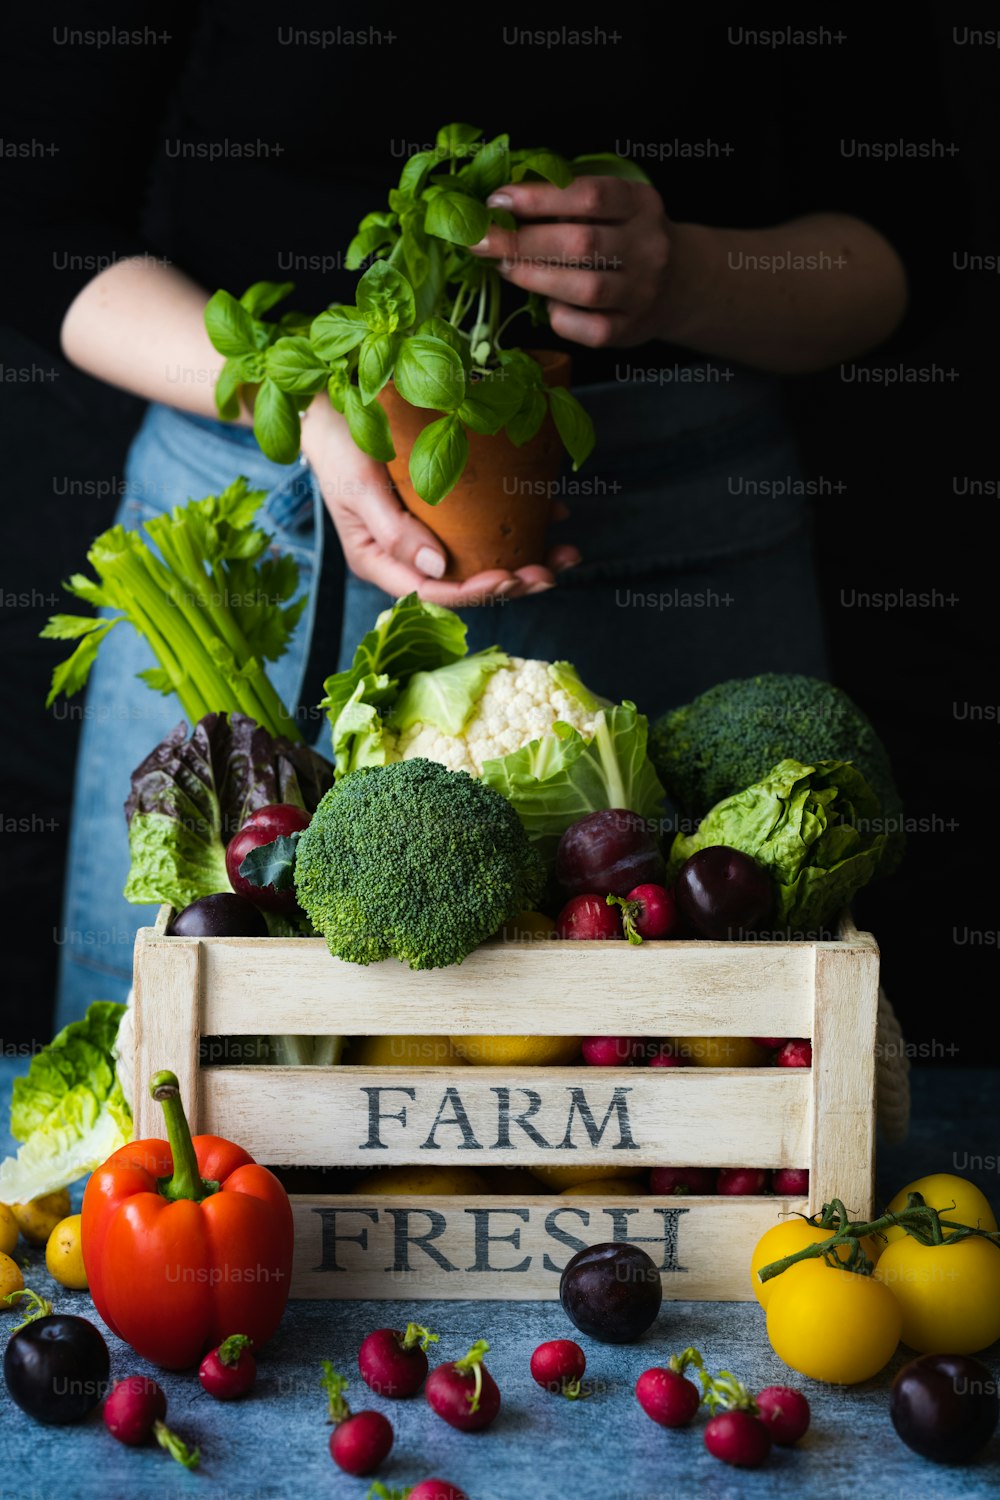 uma pessoa segurando um vaso de planta sobre uma caixa de legumes